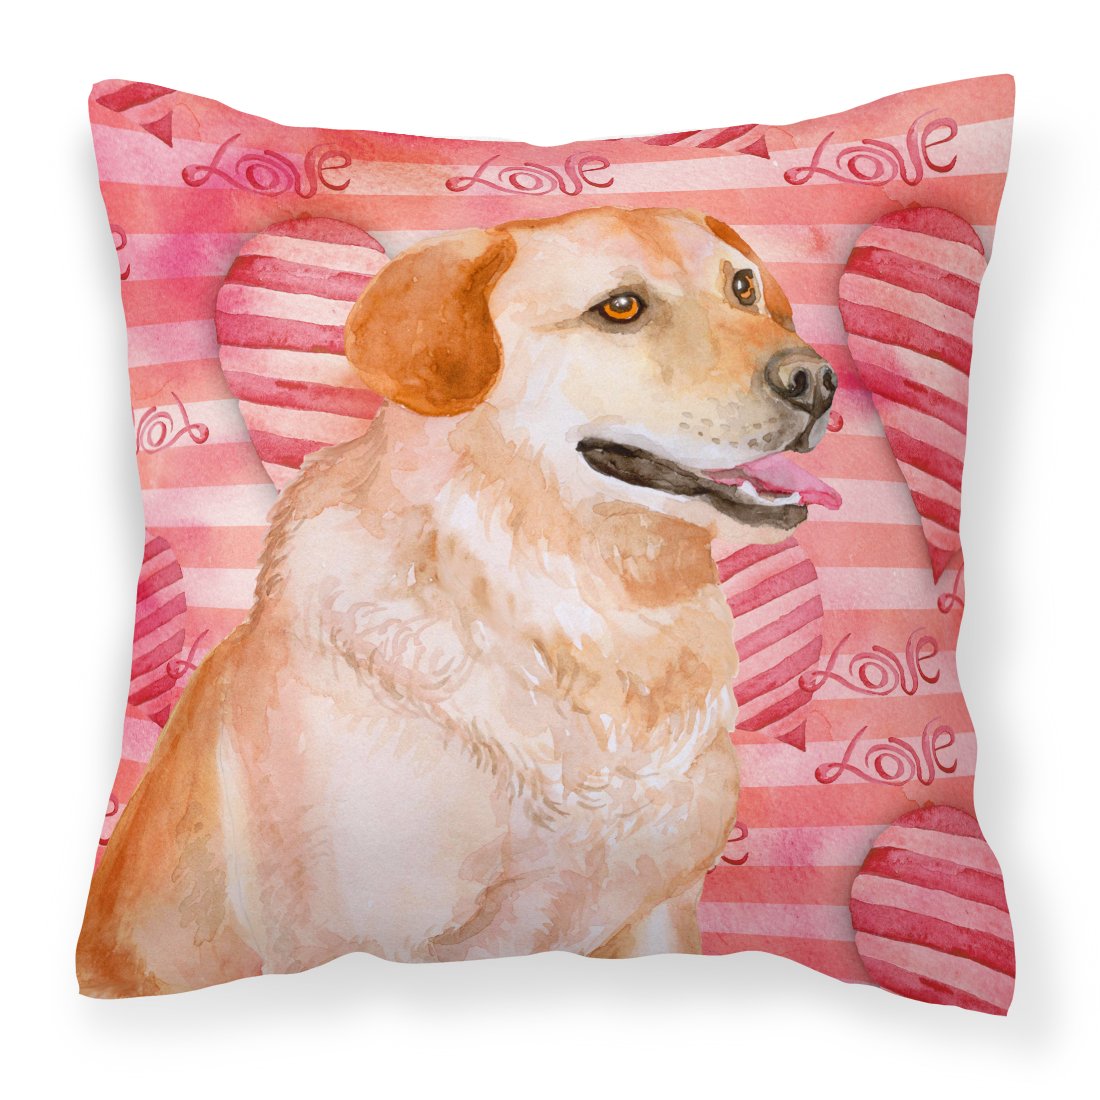 Labrador Retriever Love Fabric Decorative Pillow BB9801PW1818 by Caroline's Treasures